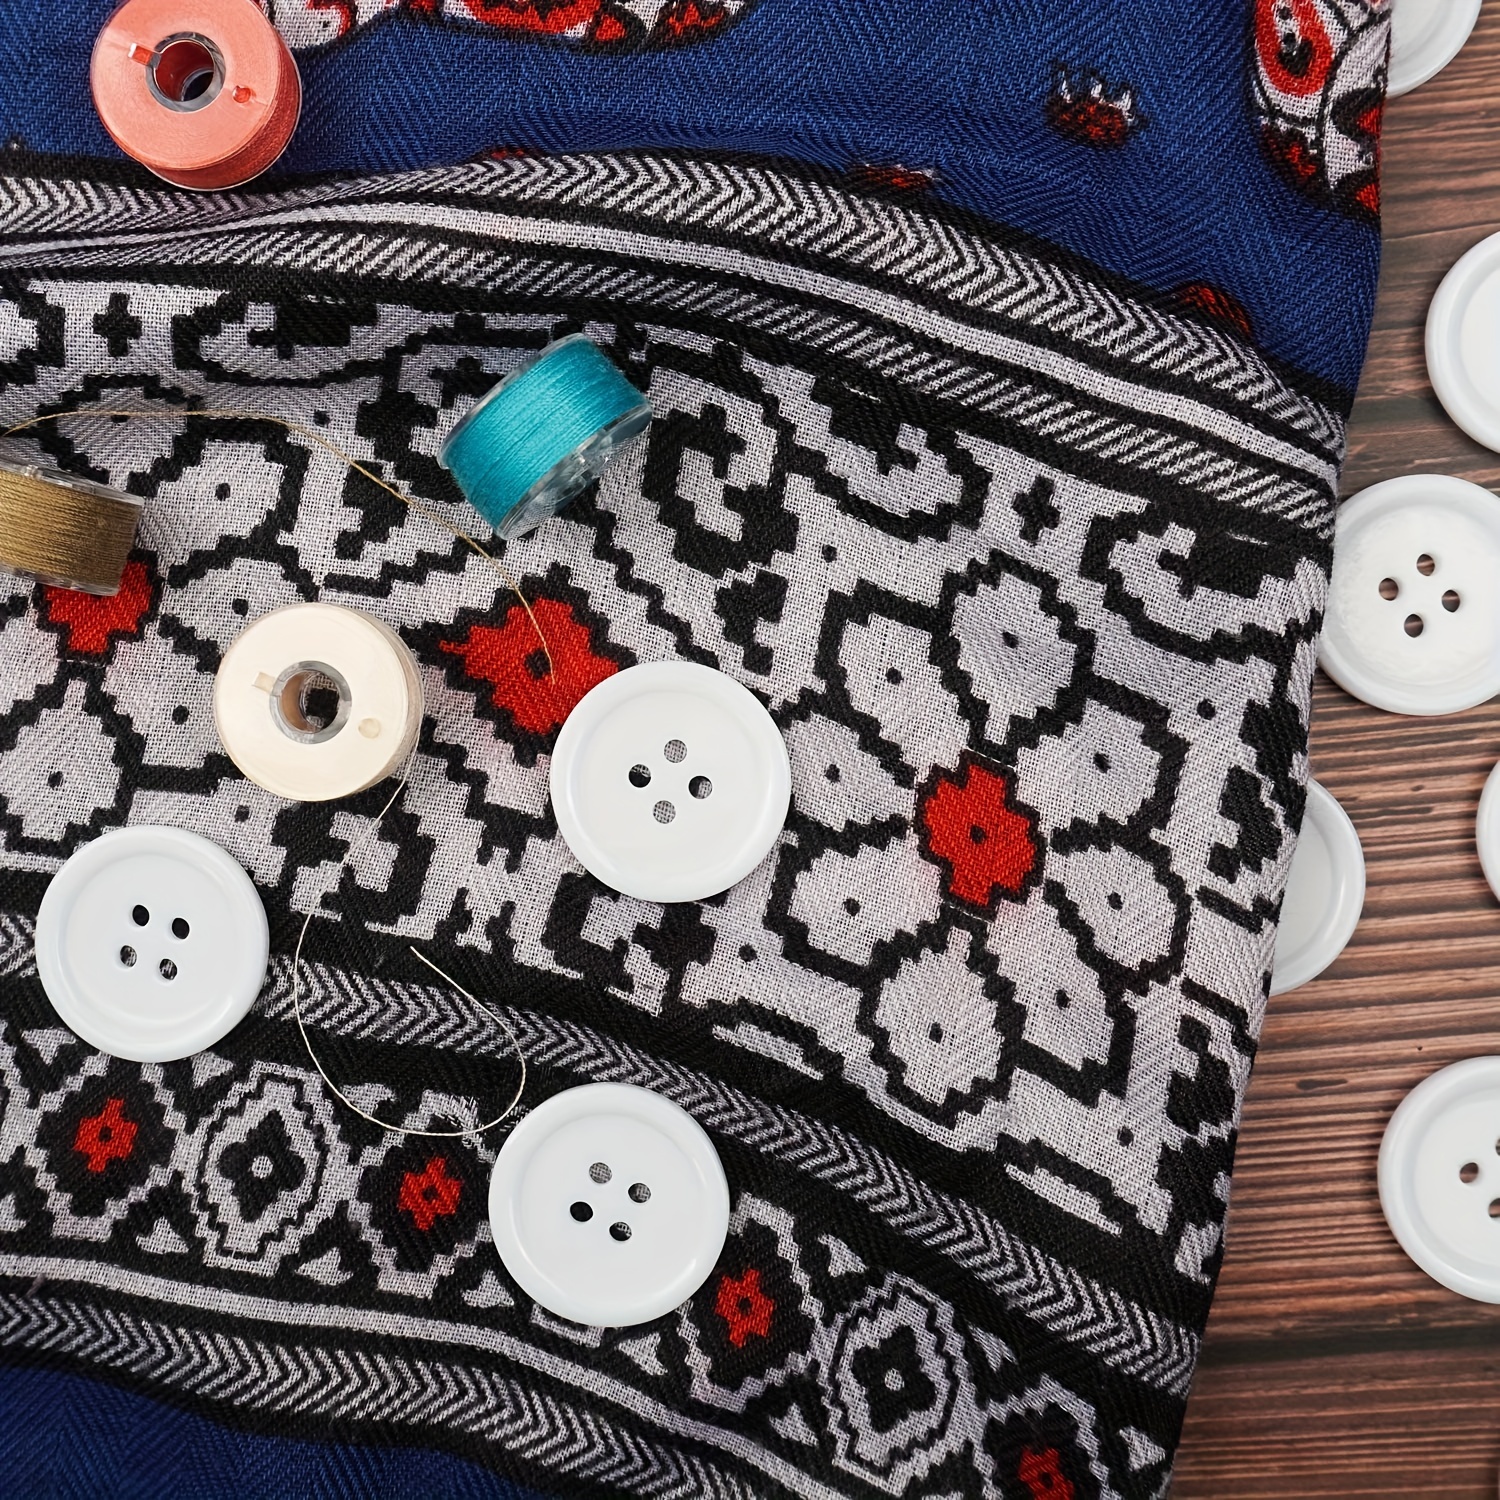  YaHoGa 40 botones de resina blanca de 1 1/5 pulgadas (1.181 in)  para costura de bricolaje, costura, manualidades, abrigos, ropa (blanco,  1.181 in) : Arte y Manualidades